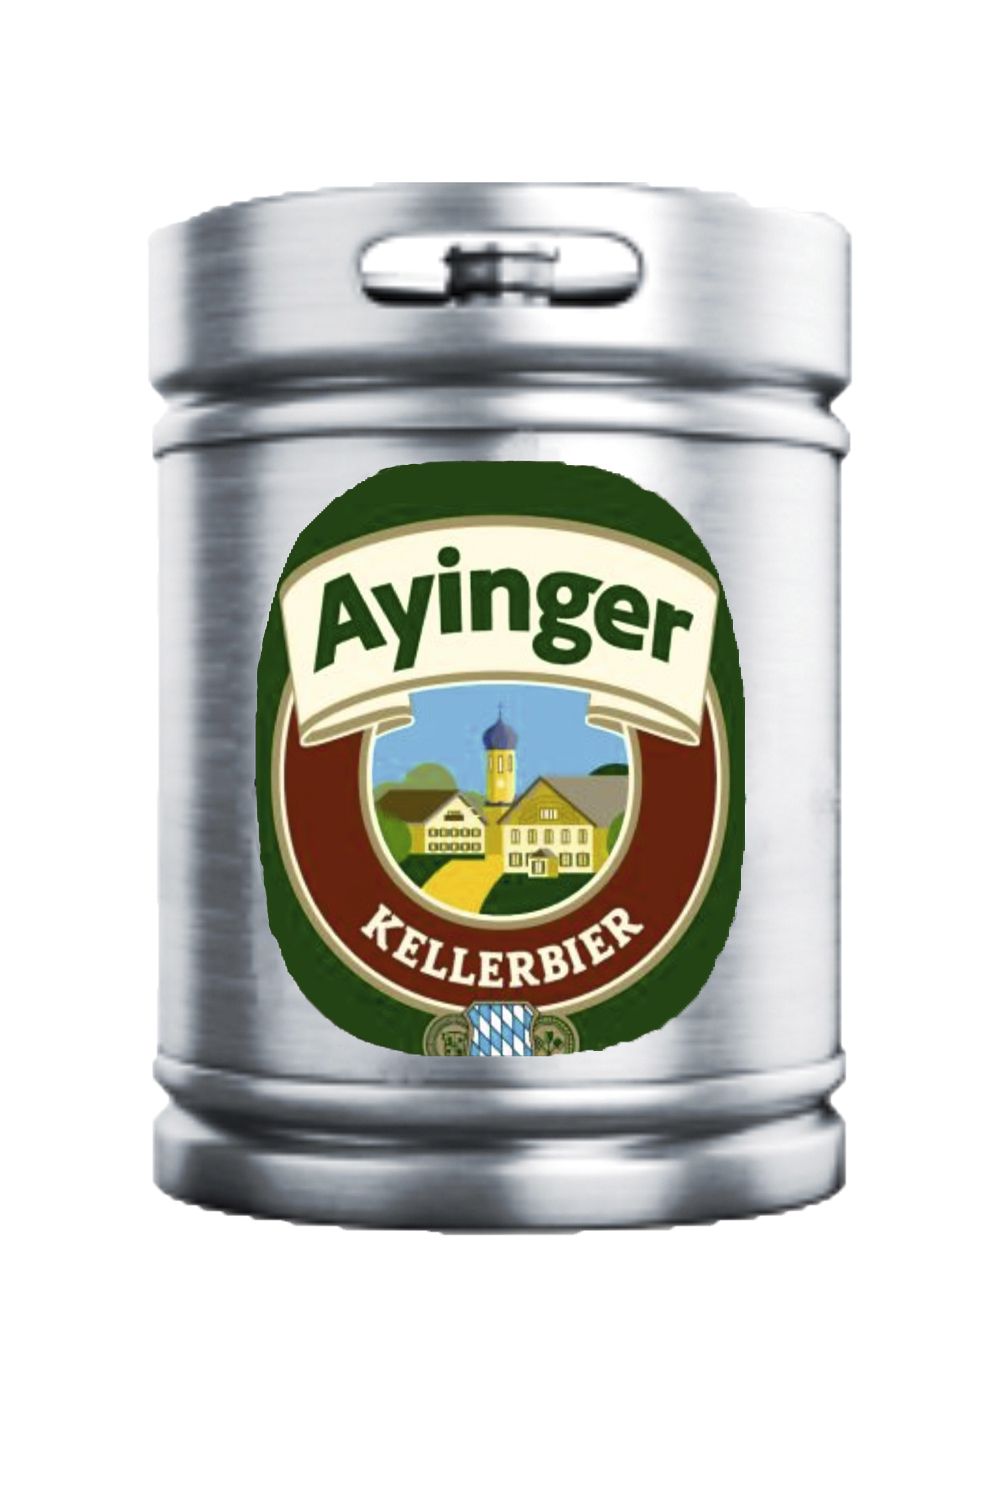 Пиво Айингер Келлербир 4,9% (Германия)